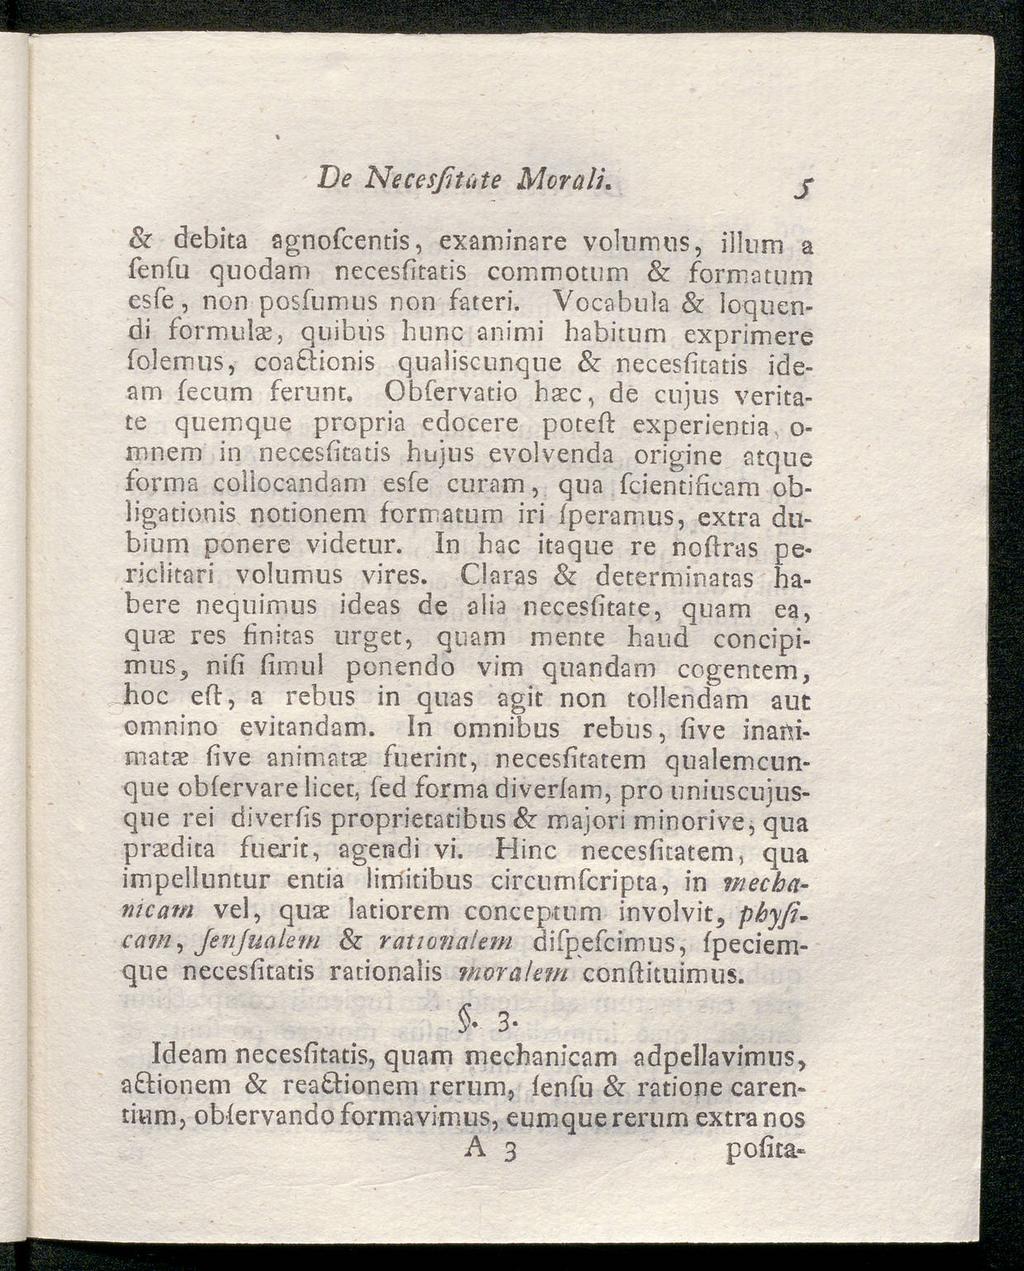 De Necesßtüte Mora IL S Sc debita agnofcentis, examinare volumns, iilnm fenfu a quodam necesiitatis commotum & formatum esfe, non posfumus non fateri.